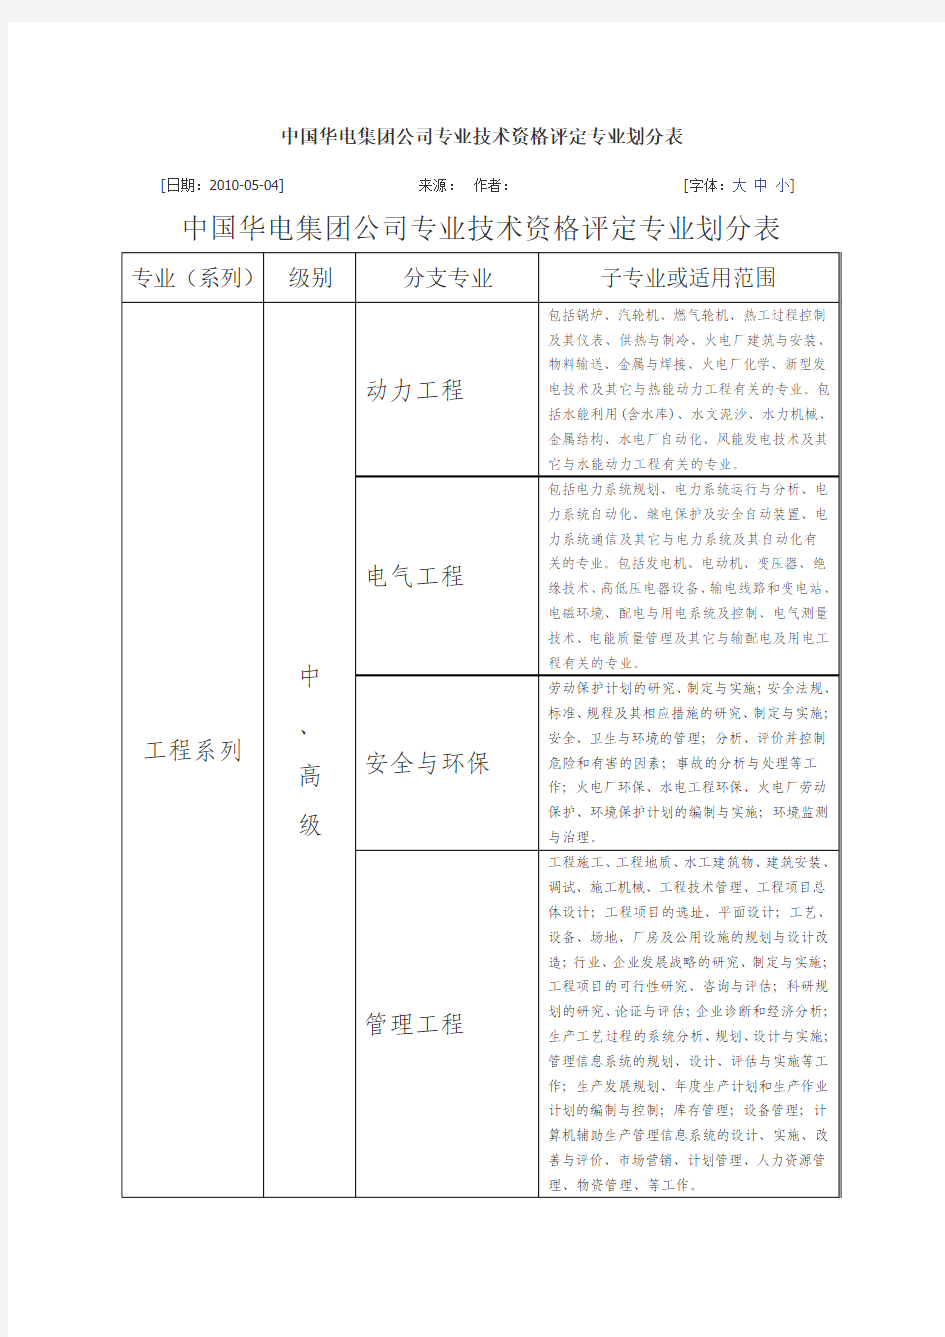 中国华电集团公司专业技术资格评定专业划分表